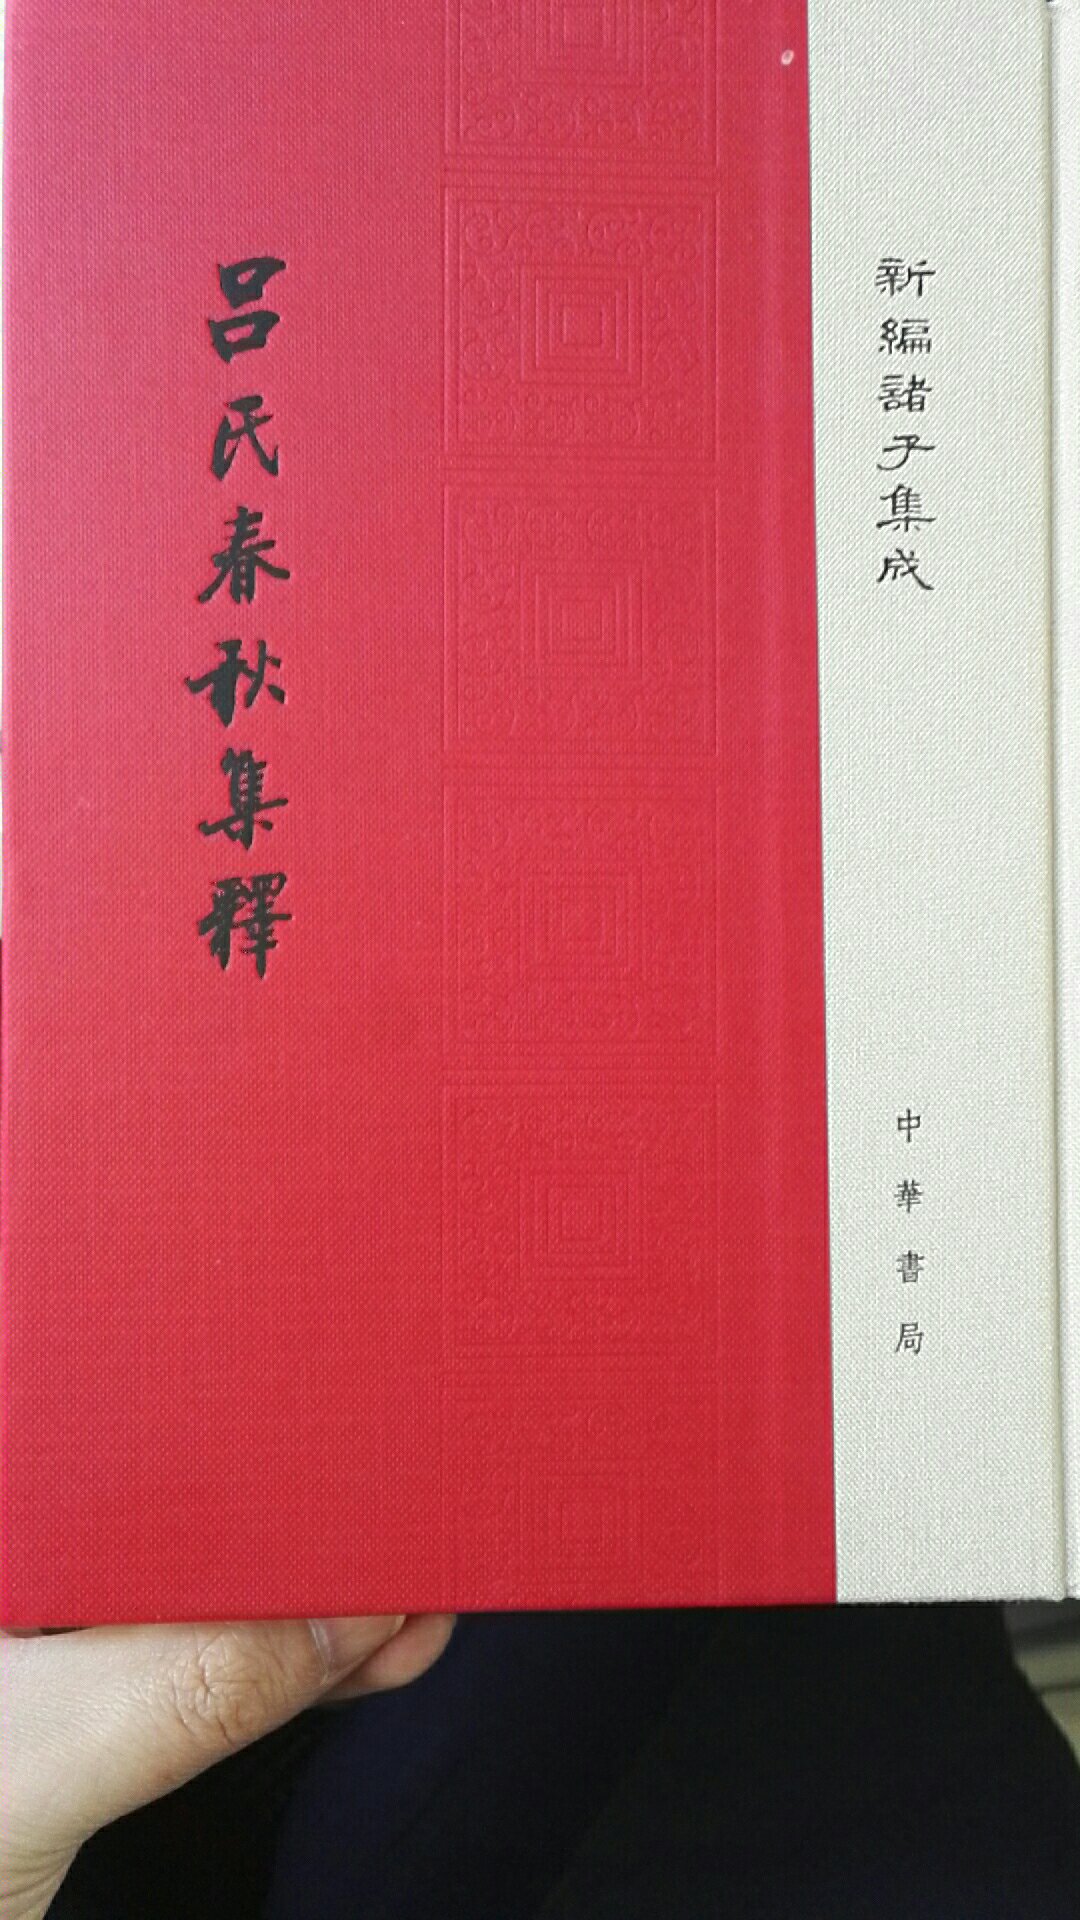 中华书局这套书装帧和印刷极好，字大行疏，收全之念大起。